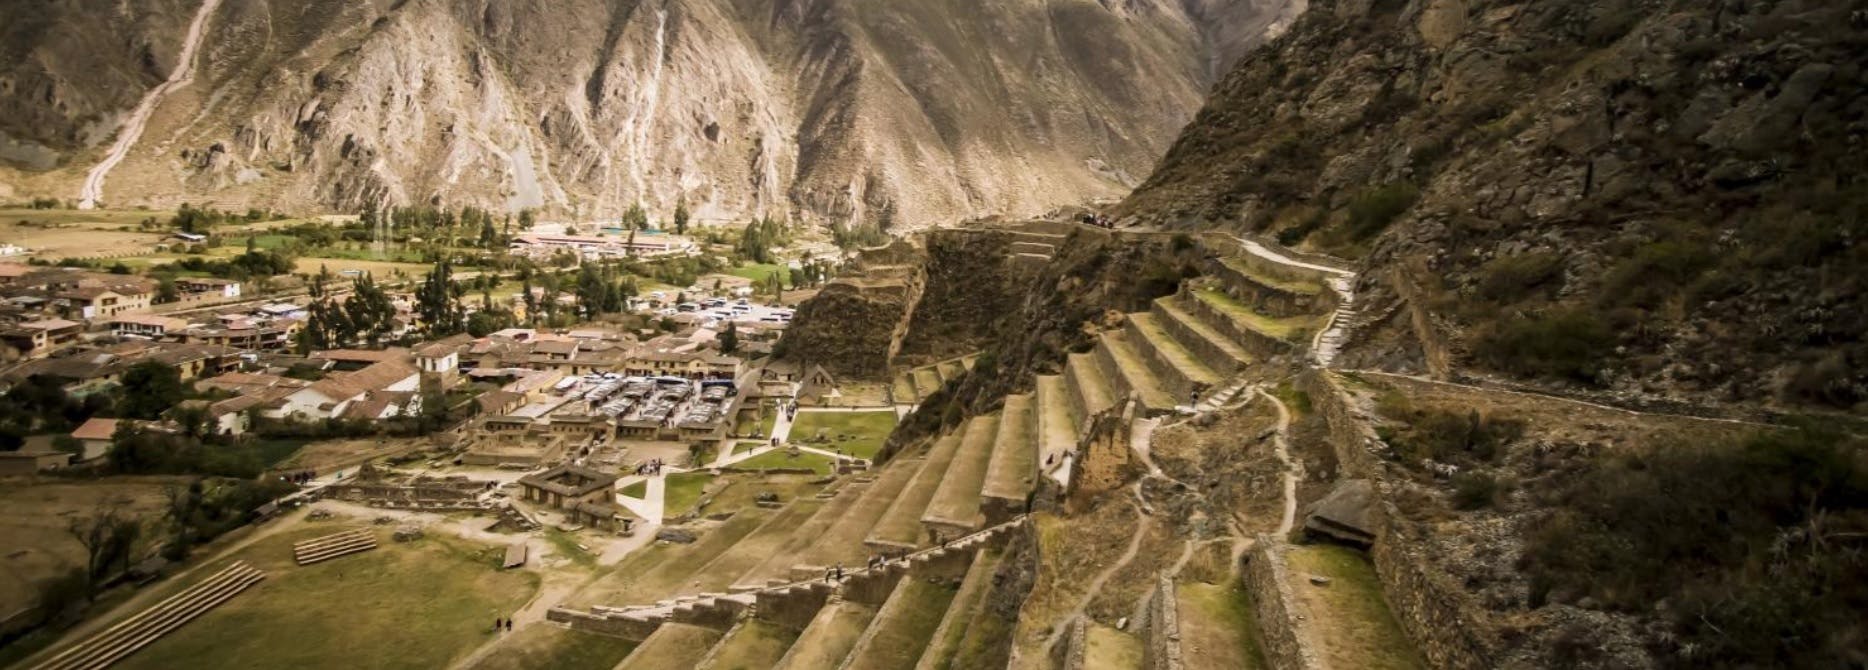 Excursion d'une journée dans la vallée sacrée au départ de Cusco: Ollantaytambo, Chinchero et musée du Yucay avec déjeuner